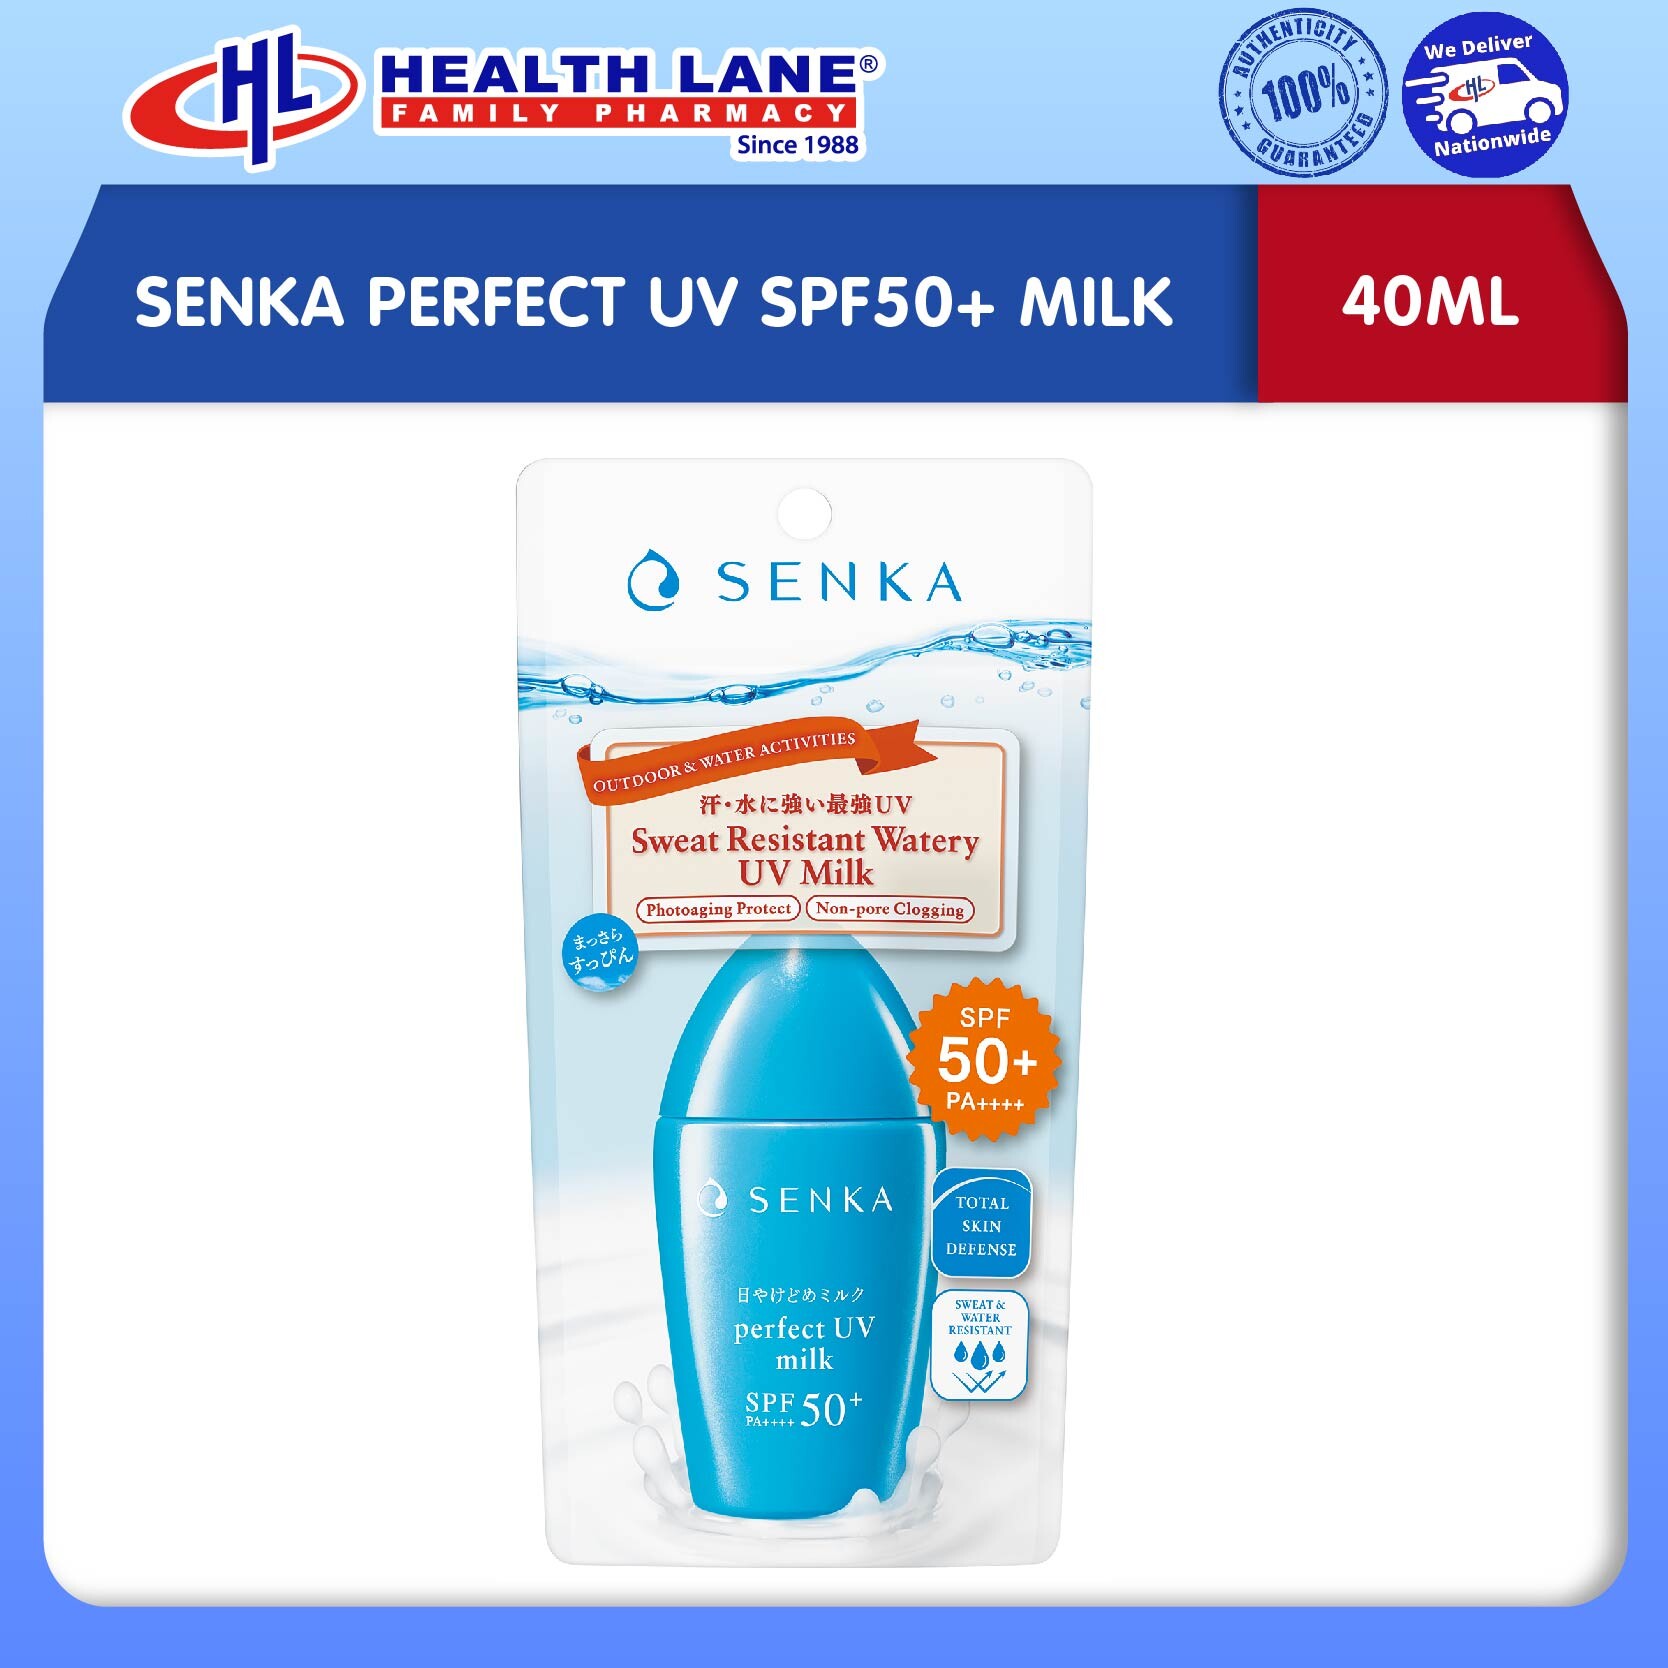 SENKA PERFECT UV SPF50+ MILK (40ML)